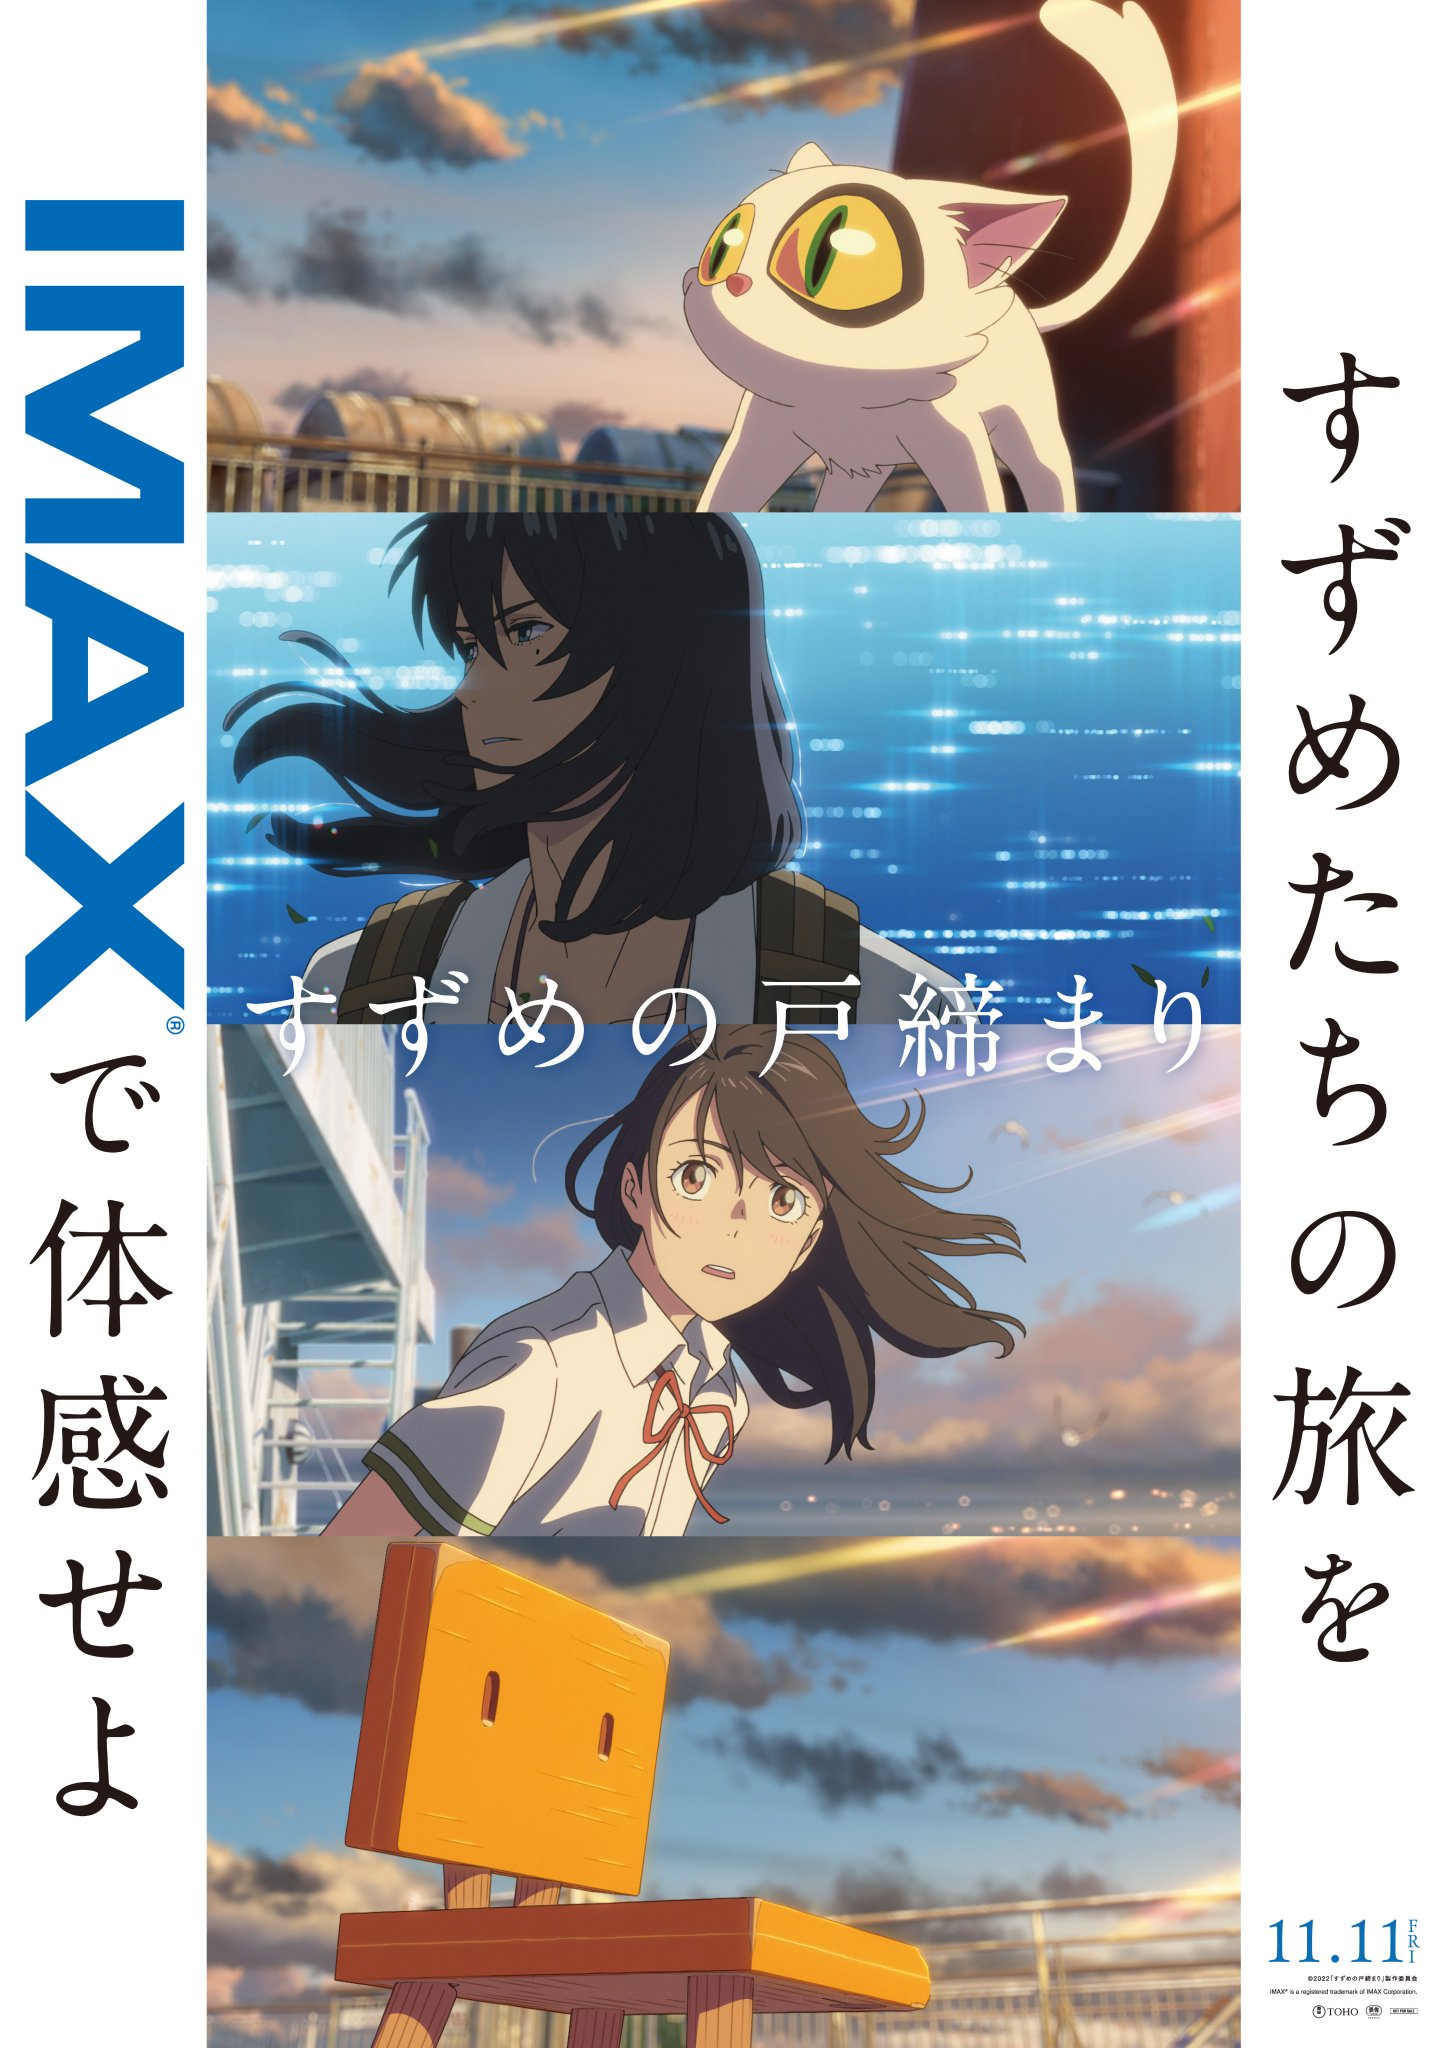 Makoto Shinkai's Suzume no Tojimari completes production